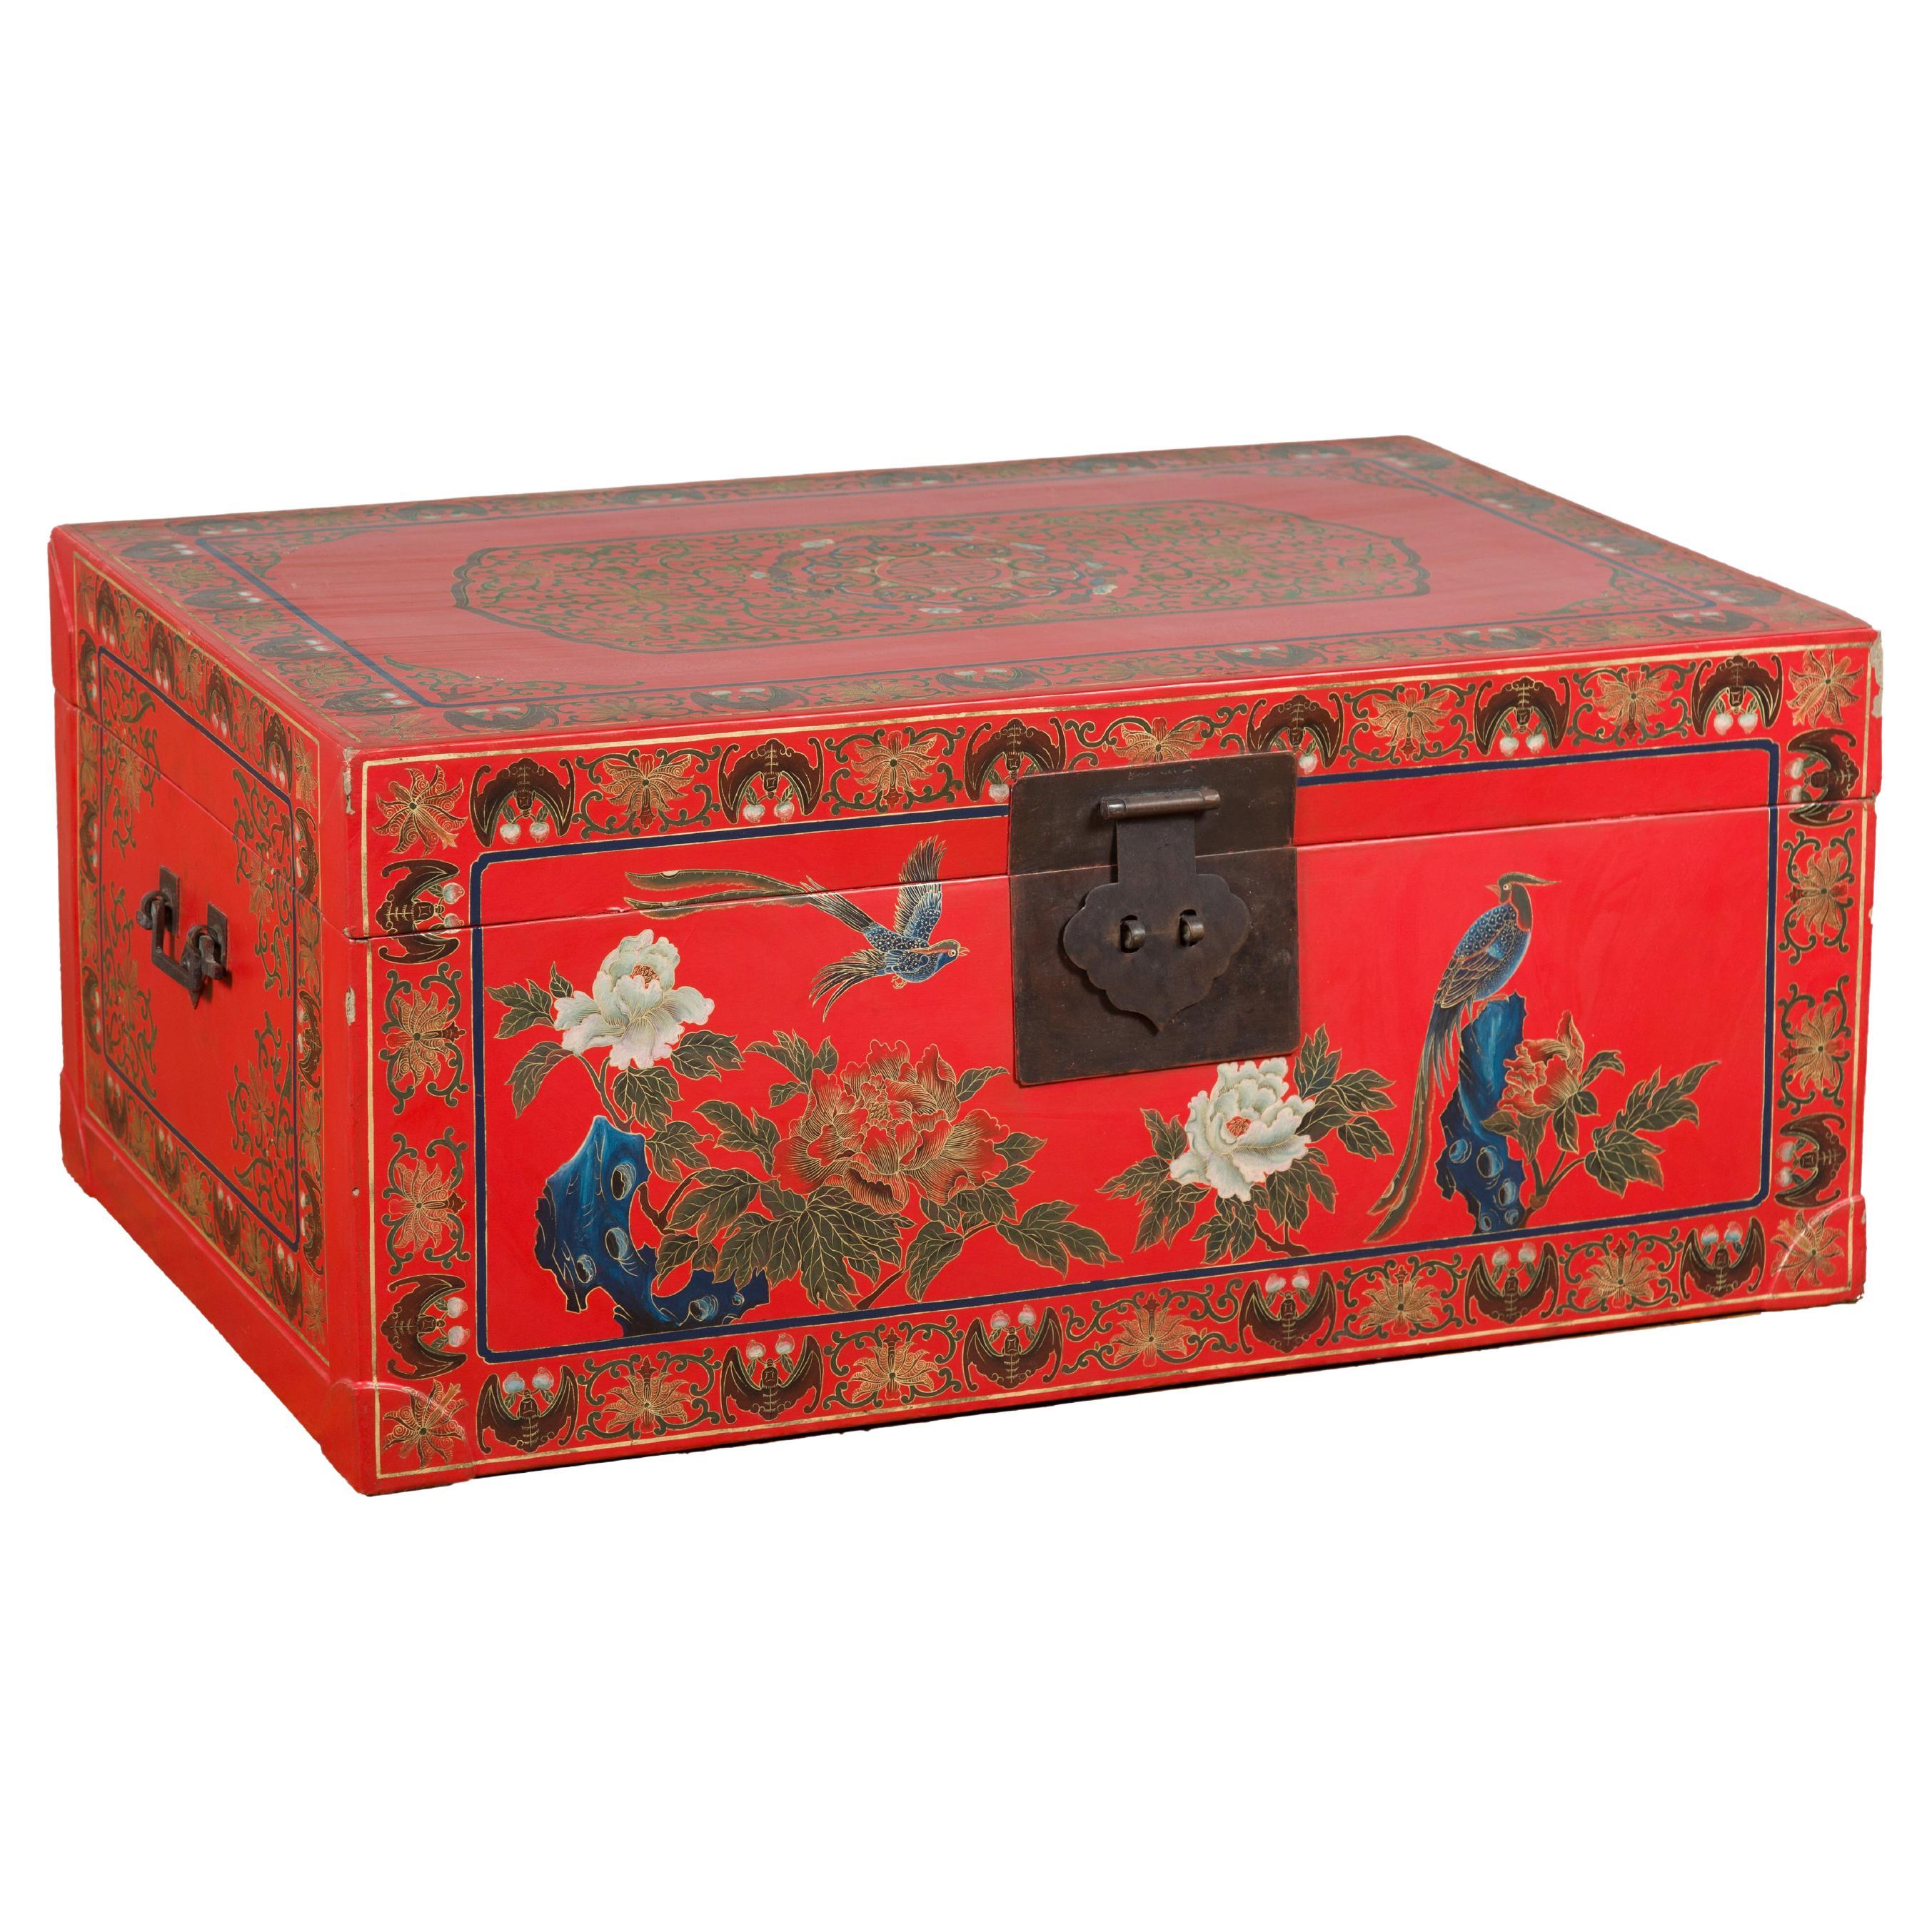 roter Lack-Koffer mit Blumen, Vögeln und Kalligraphie-Motiven